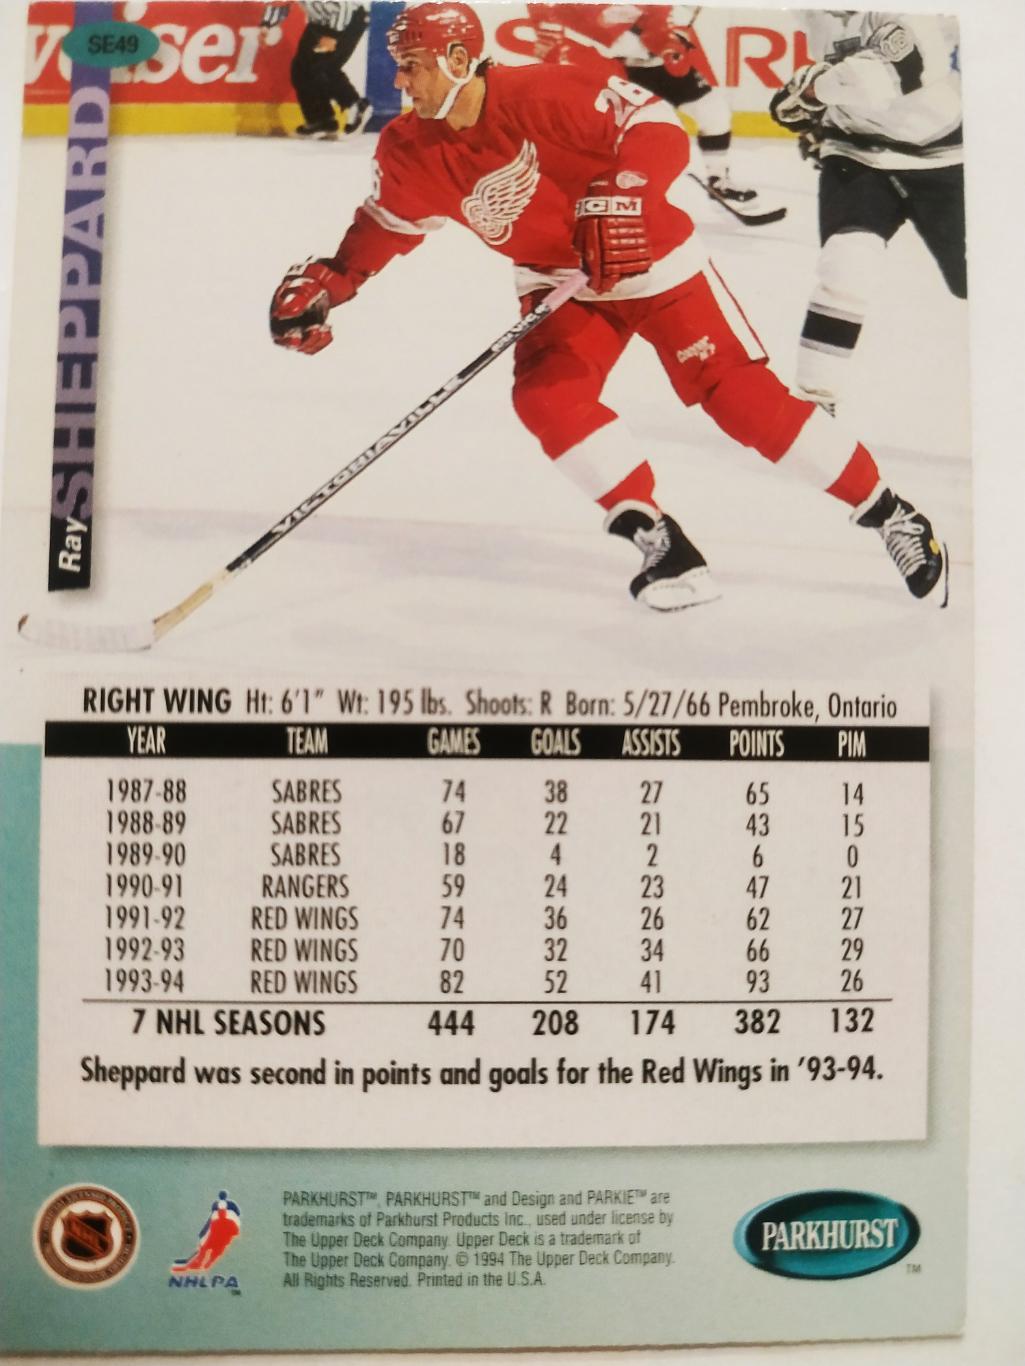 ХОККЕЙ КАРТОЧКА НХЛ PARKHURST 1994-95 NHL RAY SHEPPARD DETROIT RED WINGS #SE49 1